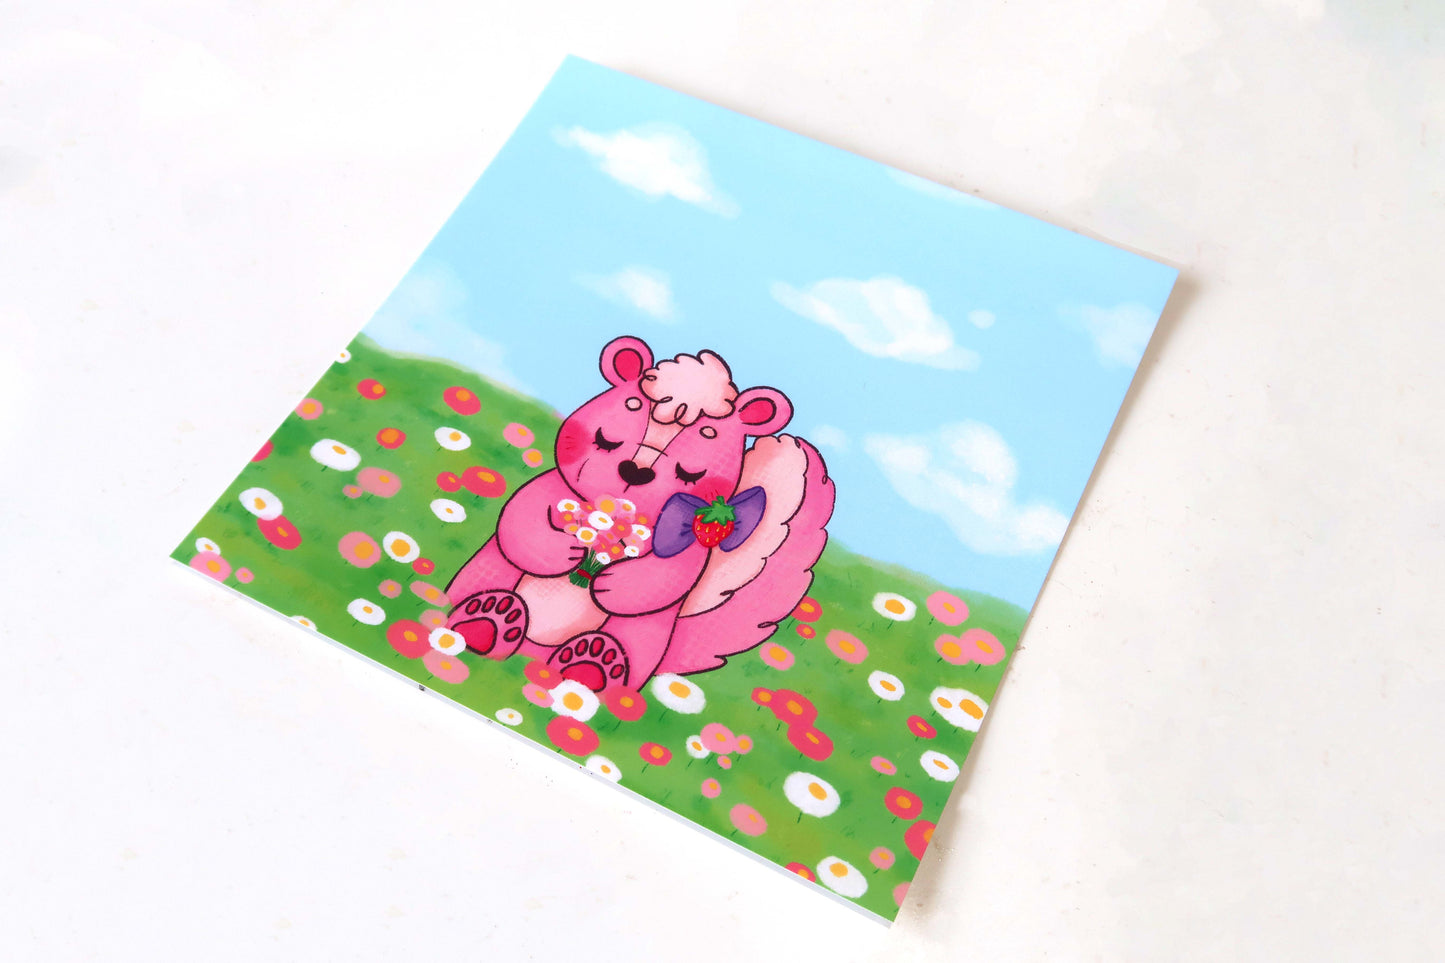 Strawberry Skunk Flower Field 148mm Mini Print